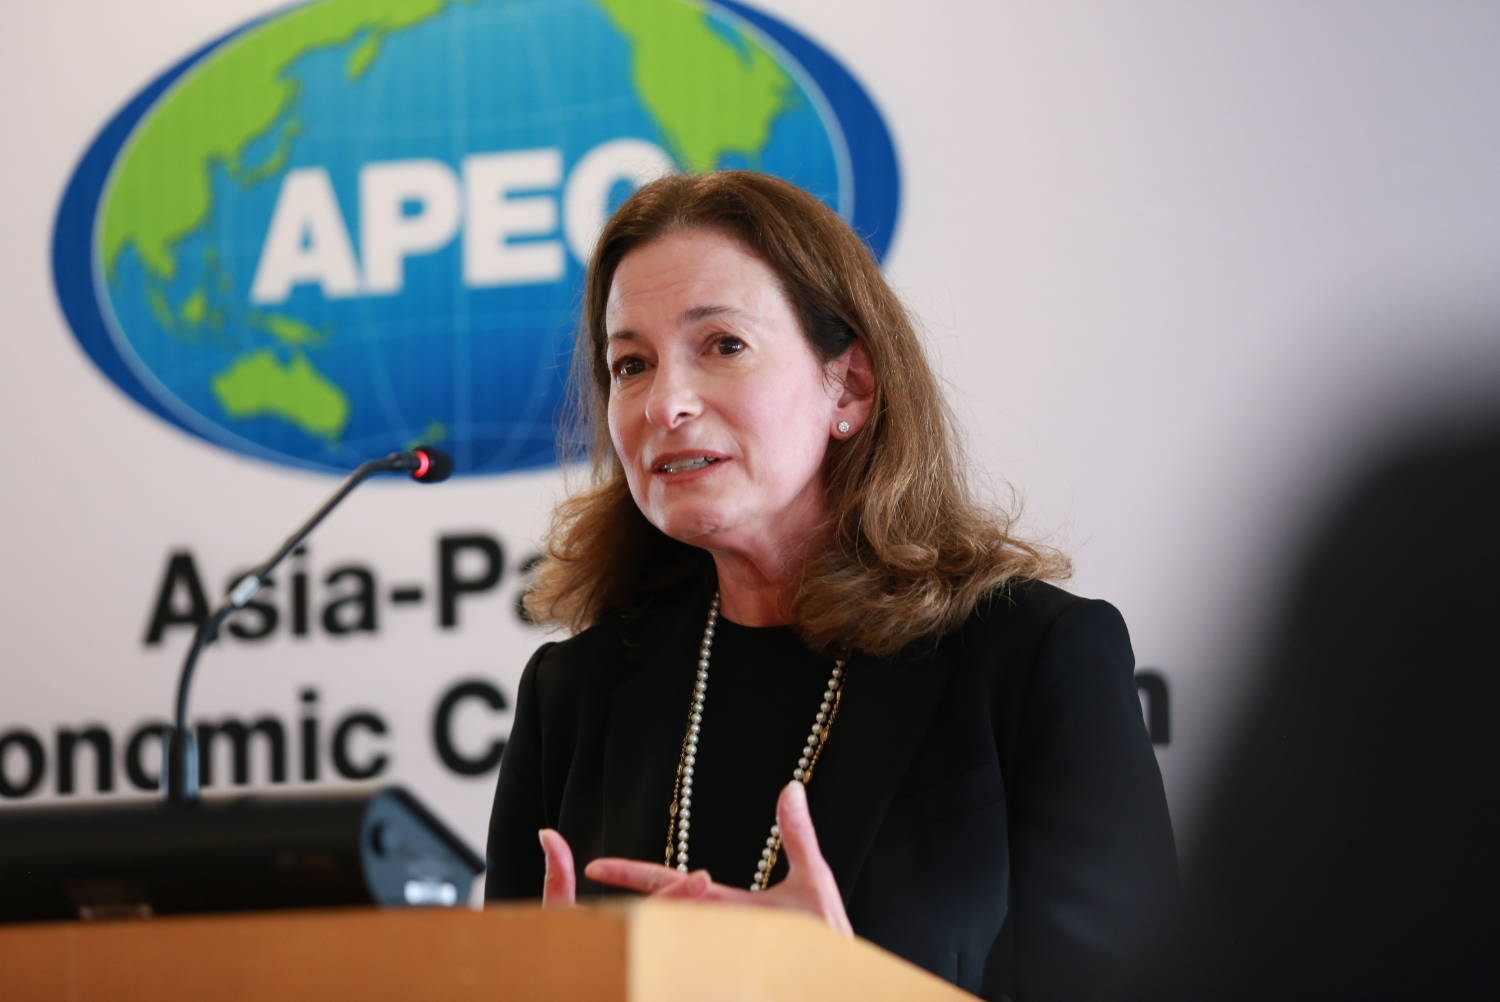 Klein Announces 2023 APEC Women and Economy Forum